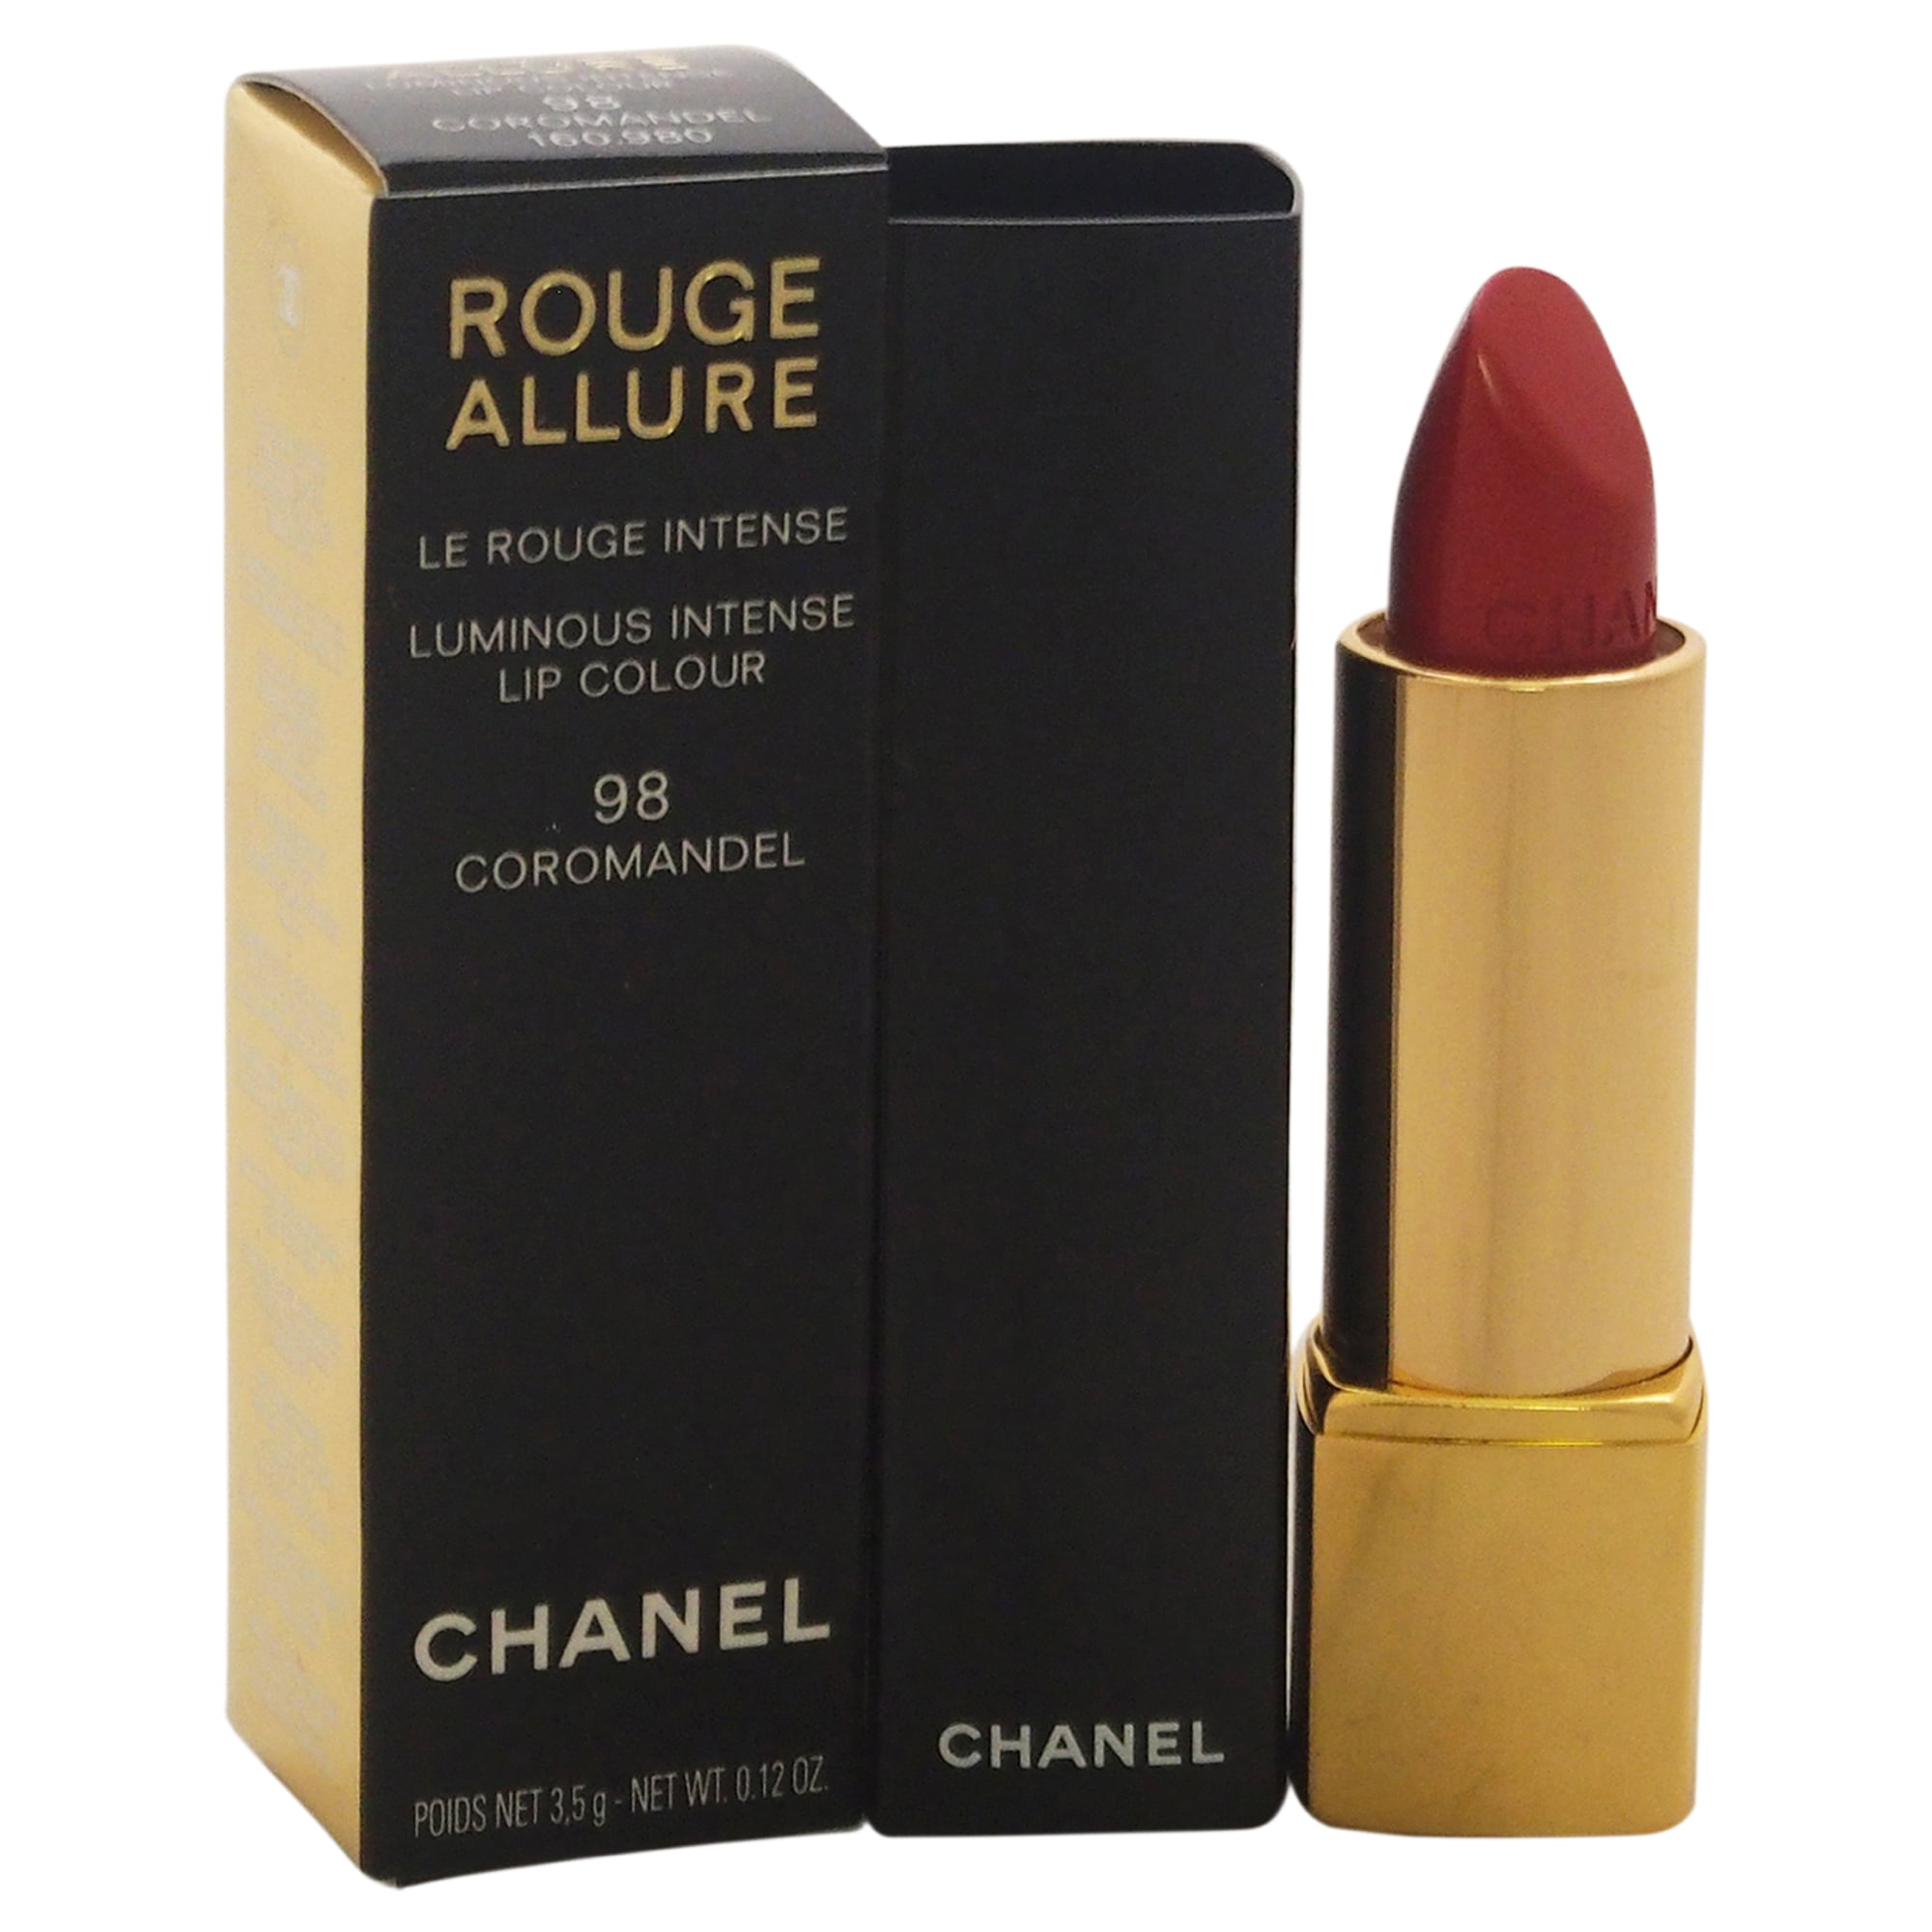 Rouge Allure Luminous Intense Lip Colour - # 98 Coromandel by Chanel for  Women - 0.12 oz Lipstick